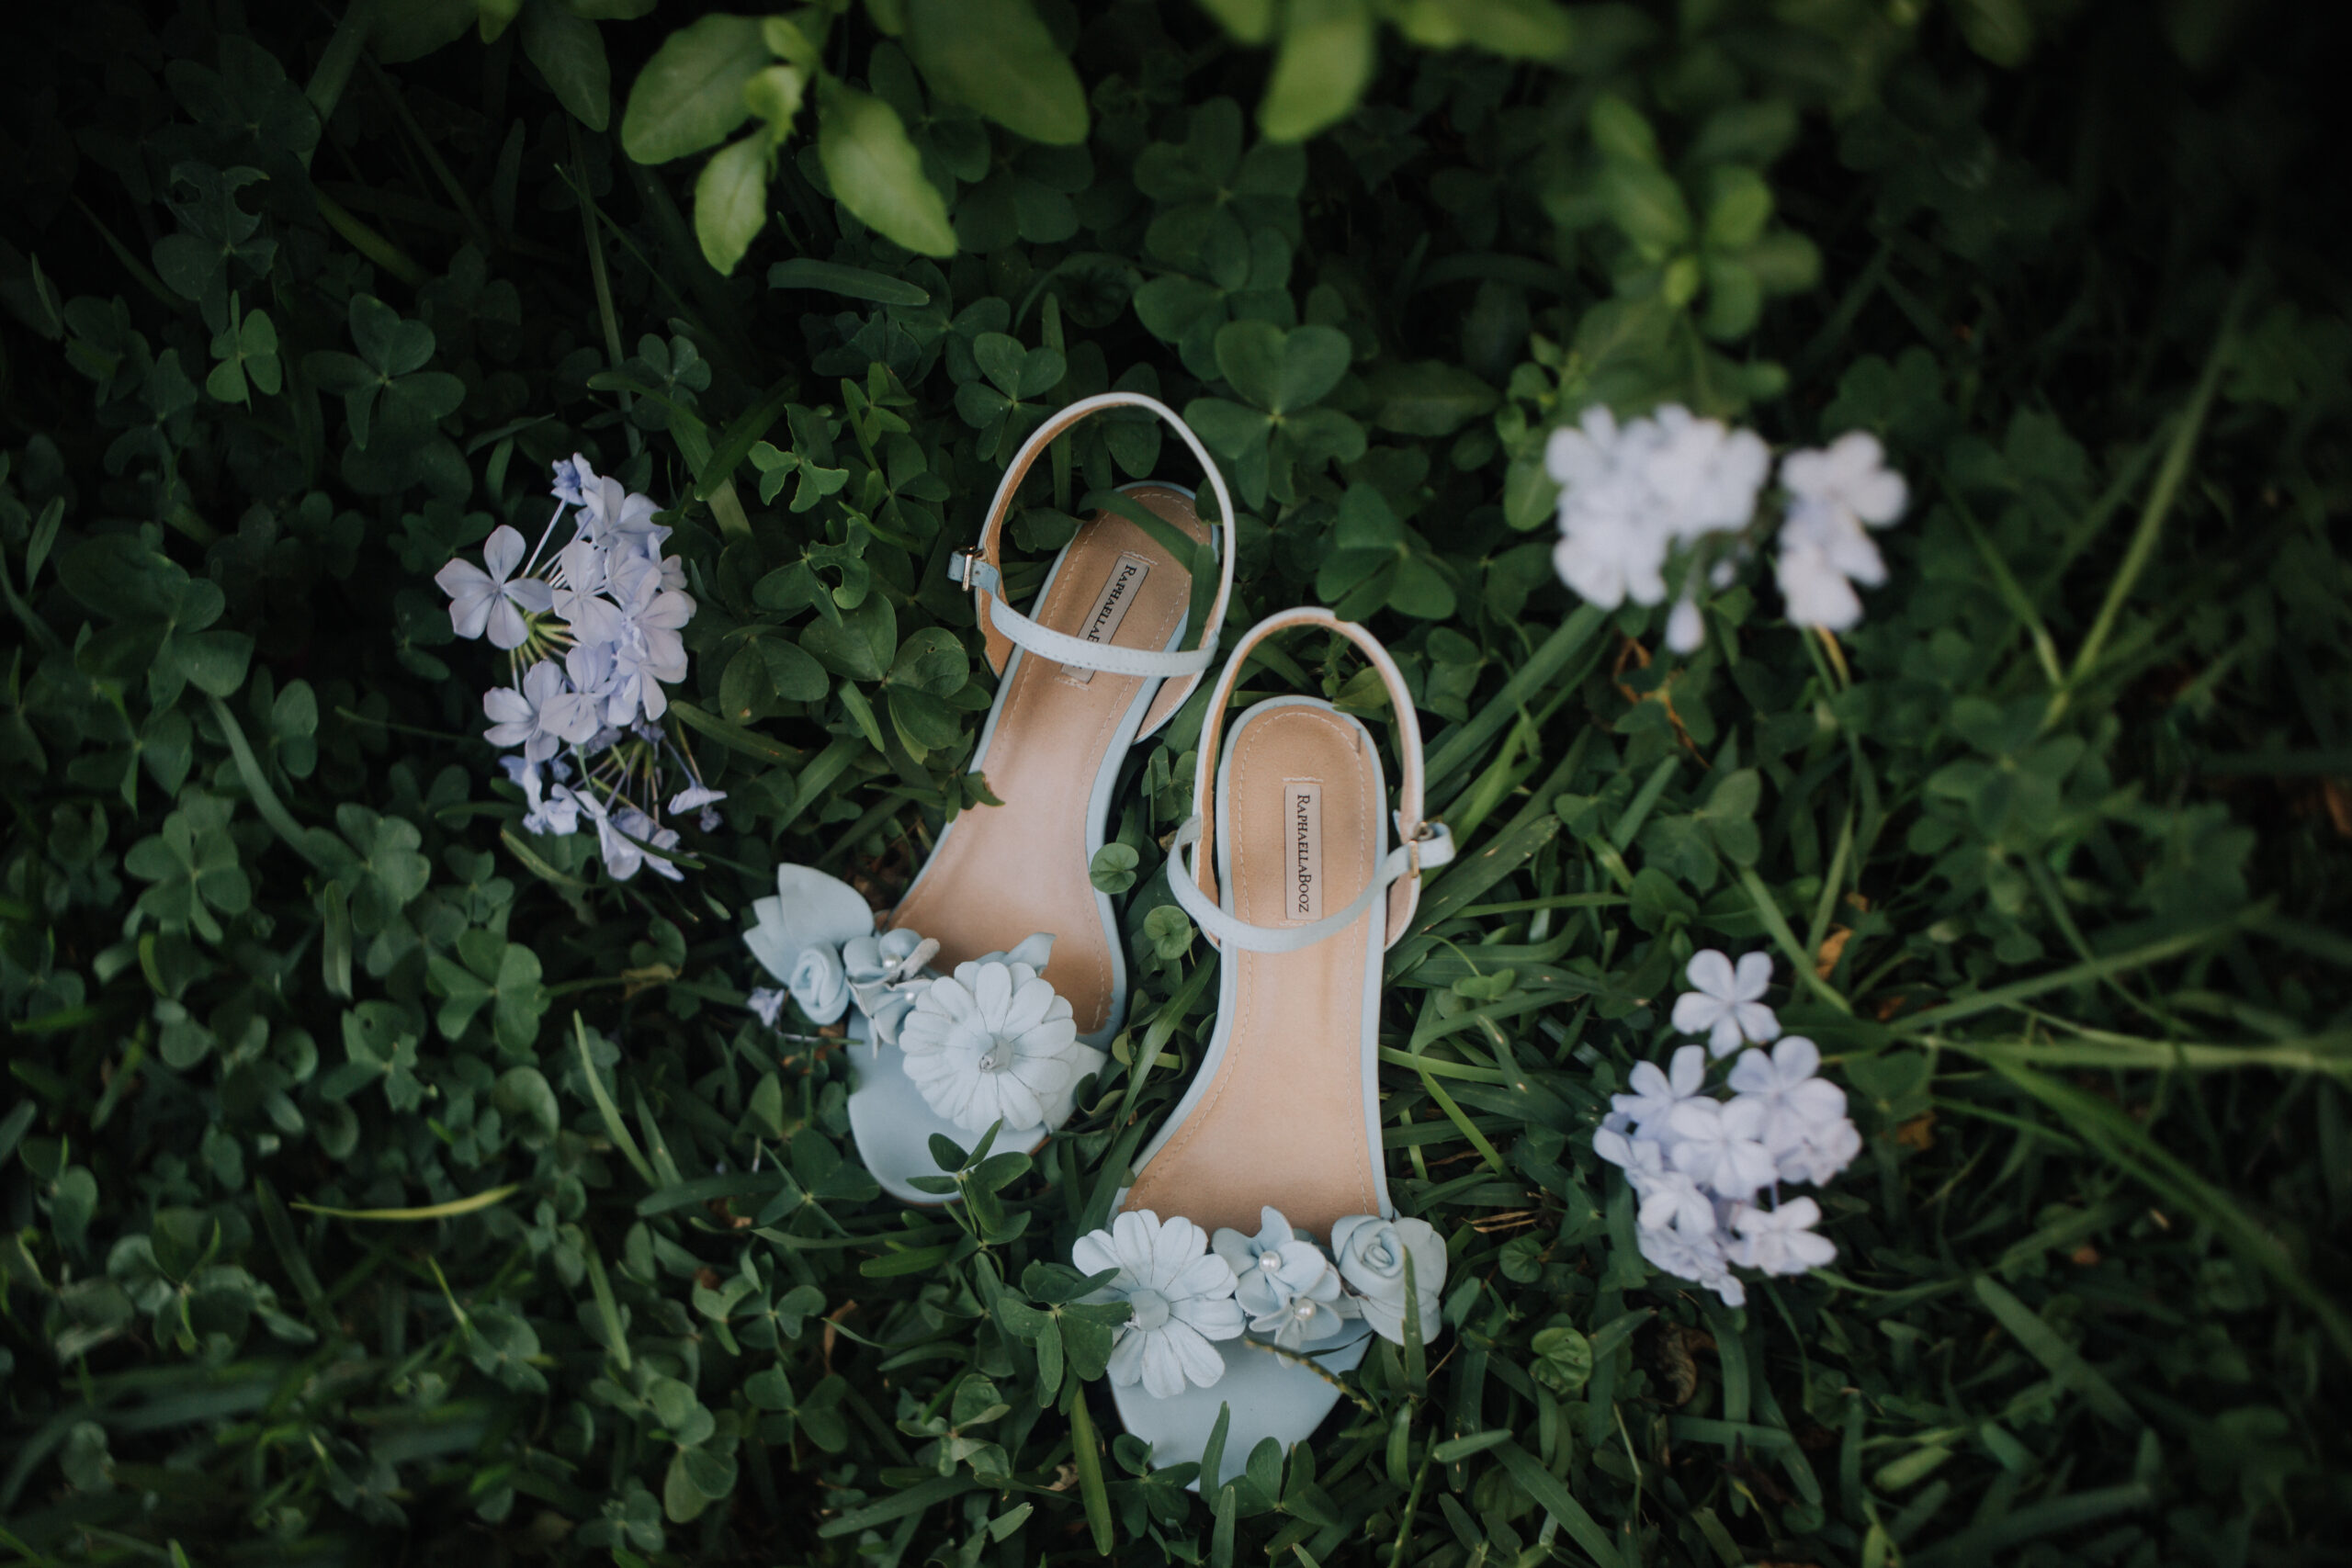 brides wedding heels sit in the grass